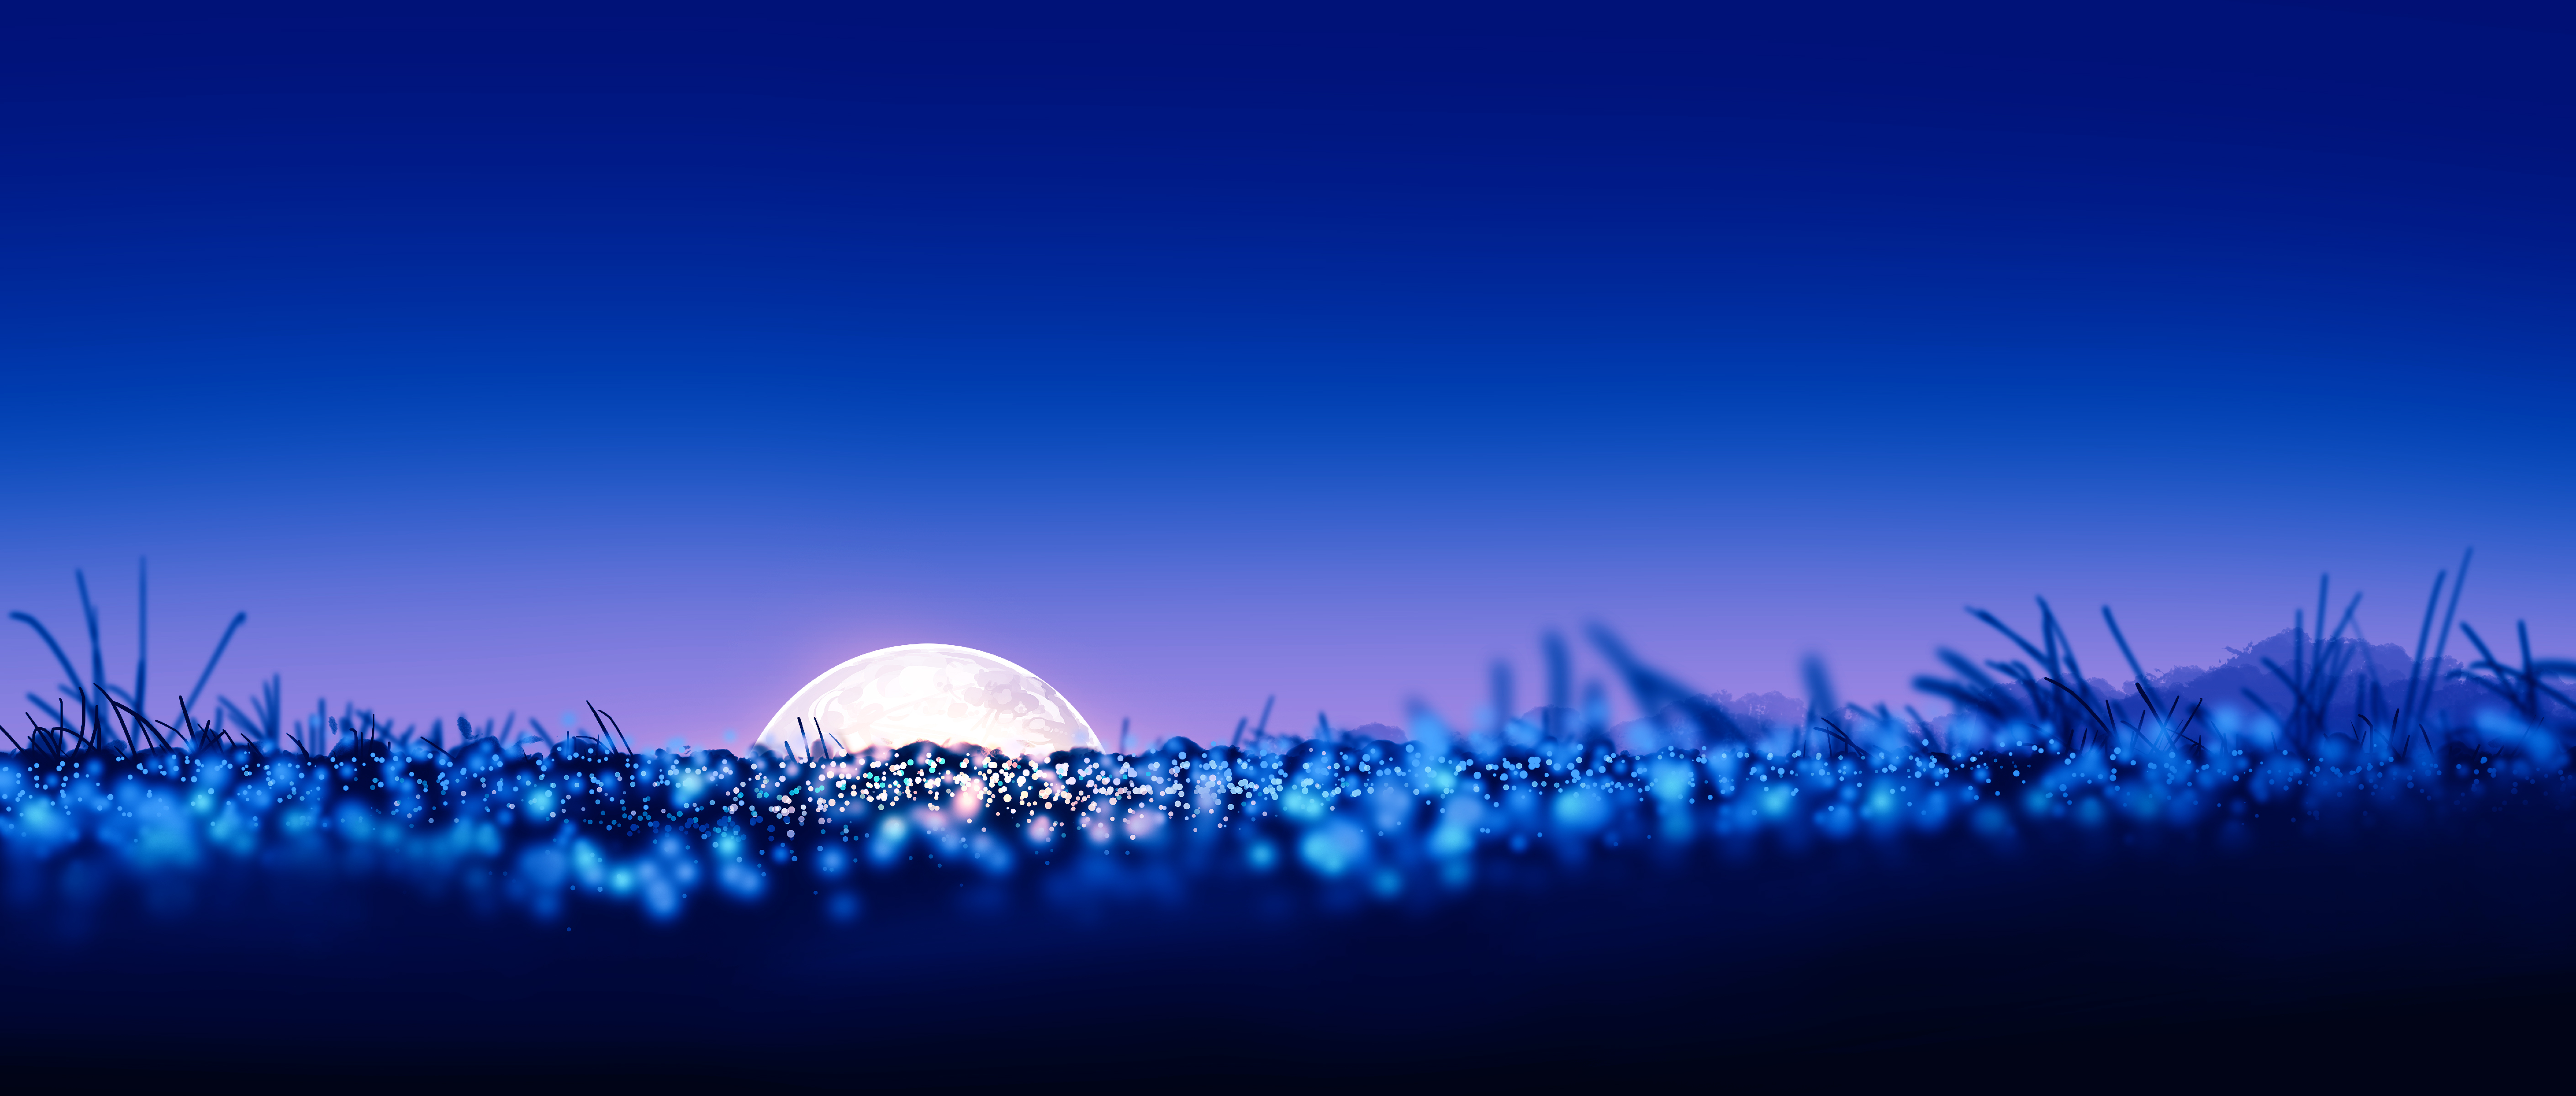 General 5640x2400 Gracile digital art artwork illustration Japan landscape night nightscape purple wide screen ultrawide Moon field